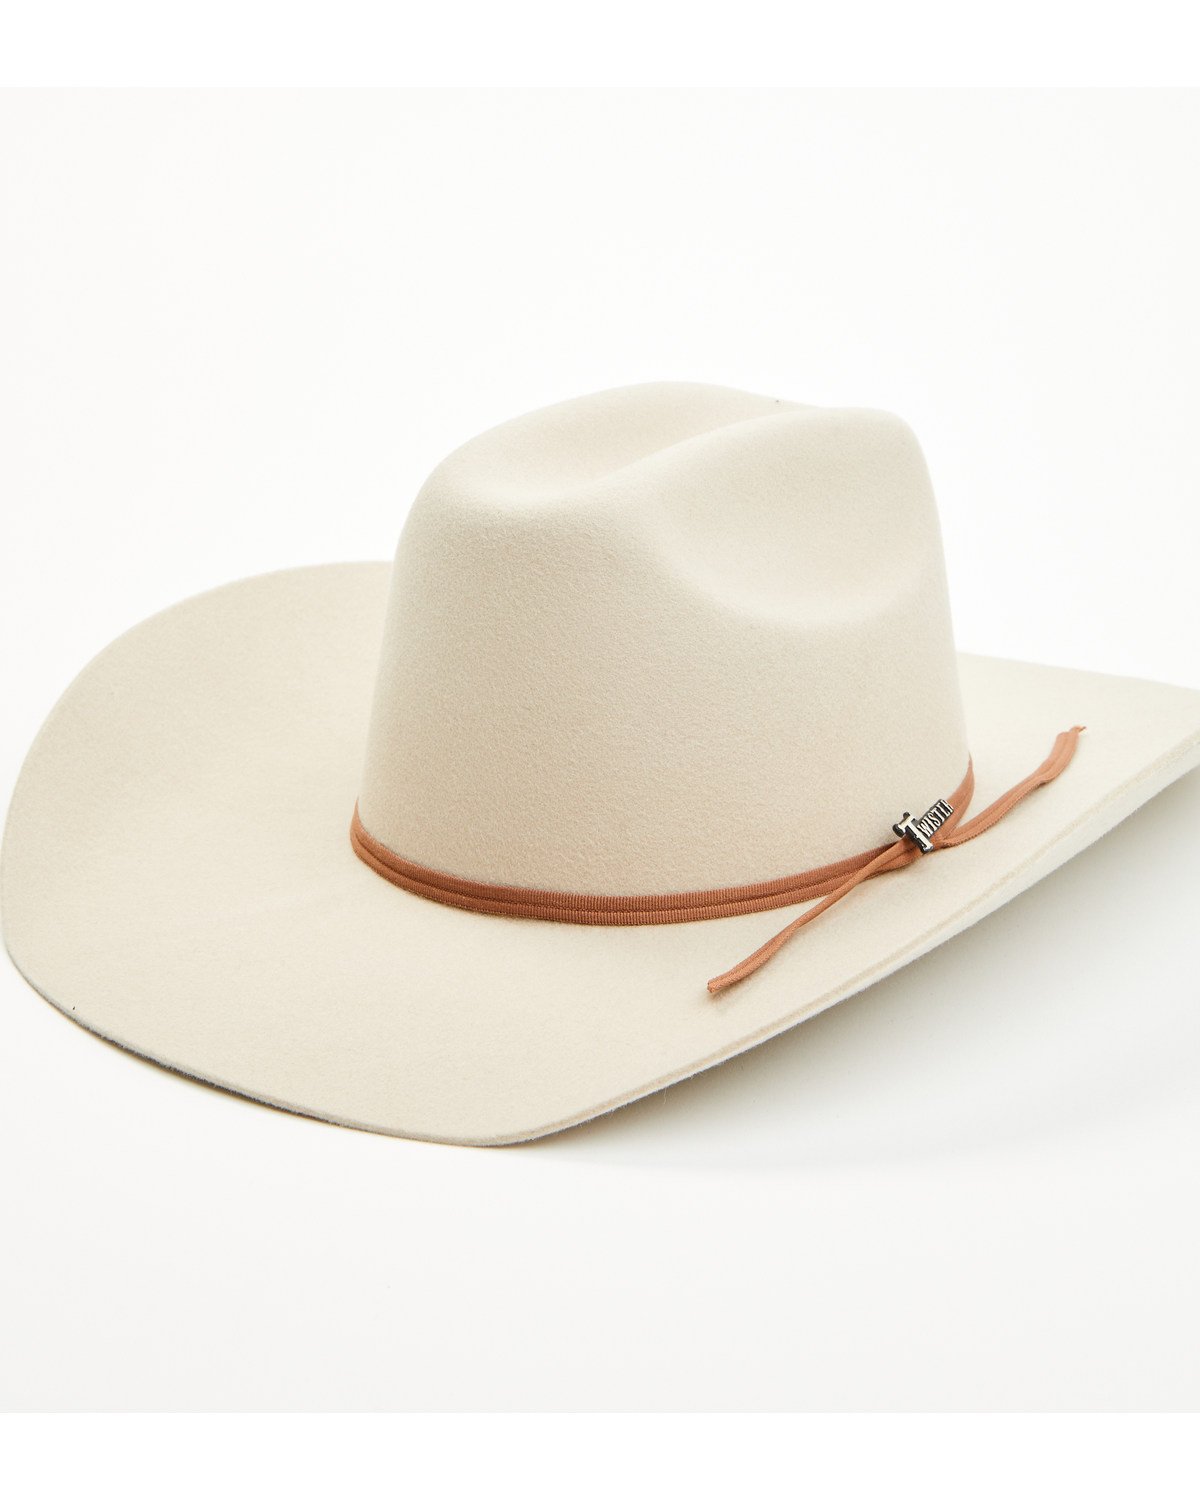 M & F Western Kids' Felt Cowboy Hat